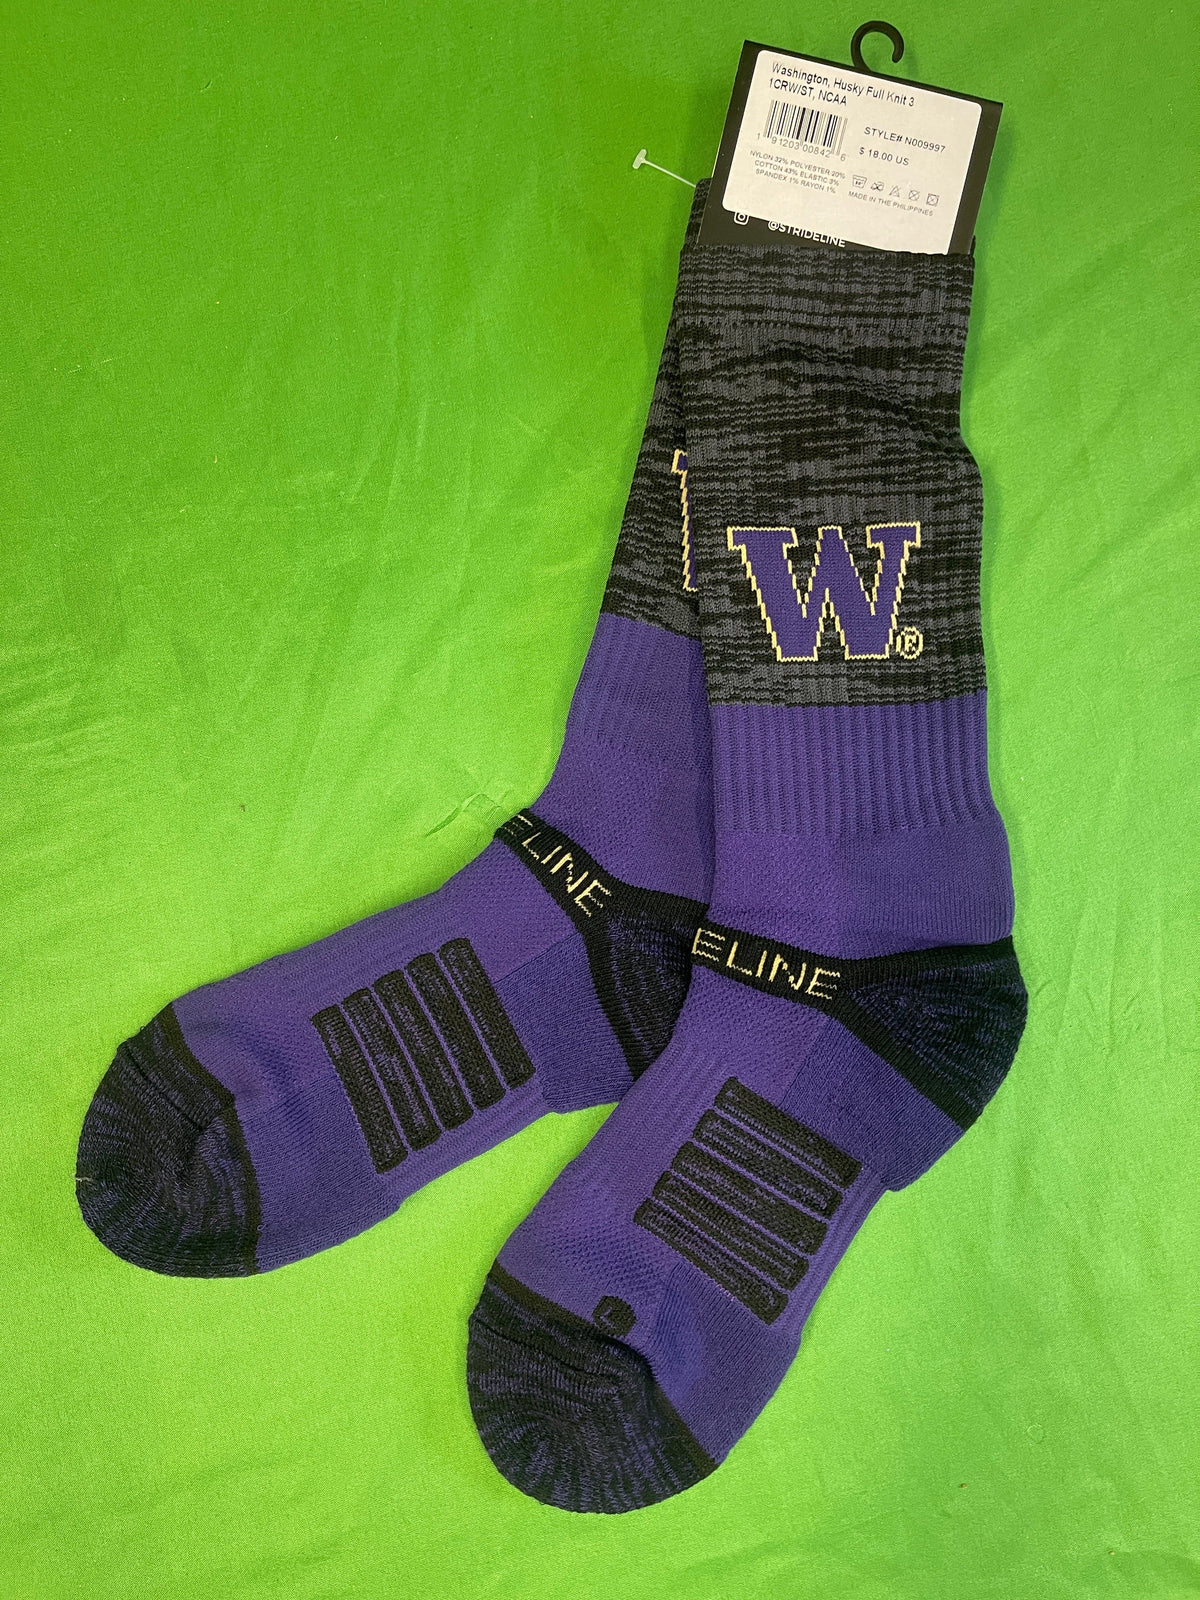 NCAA Washington Huskies Grey & Purple Socks Medium/Large NWT